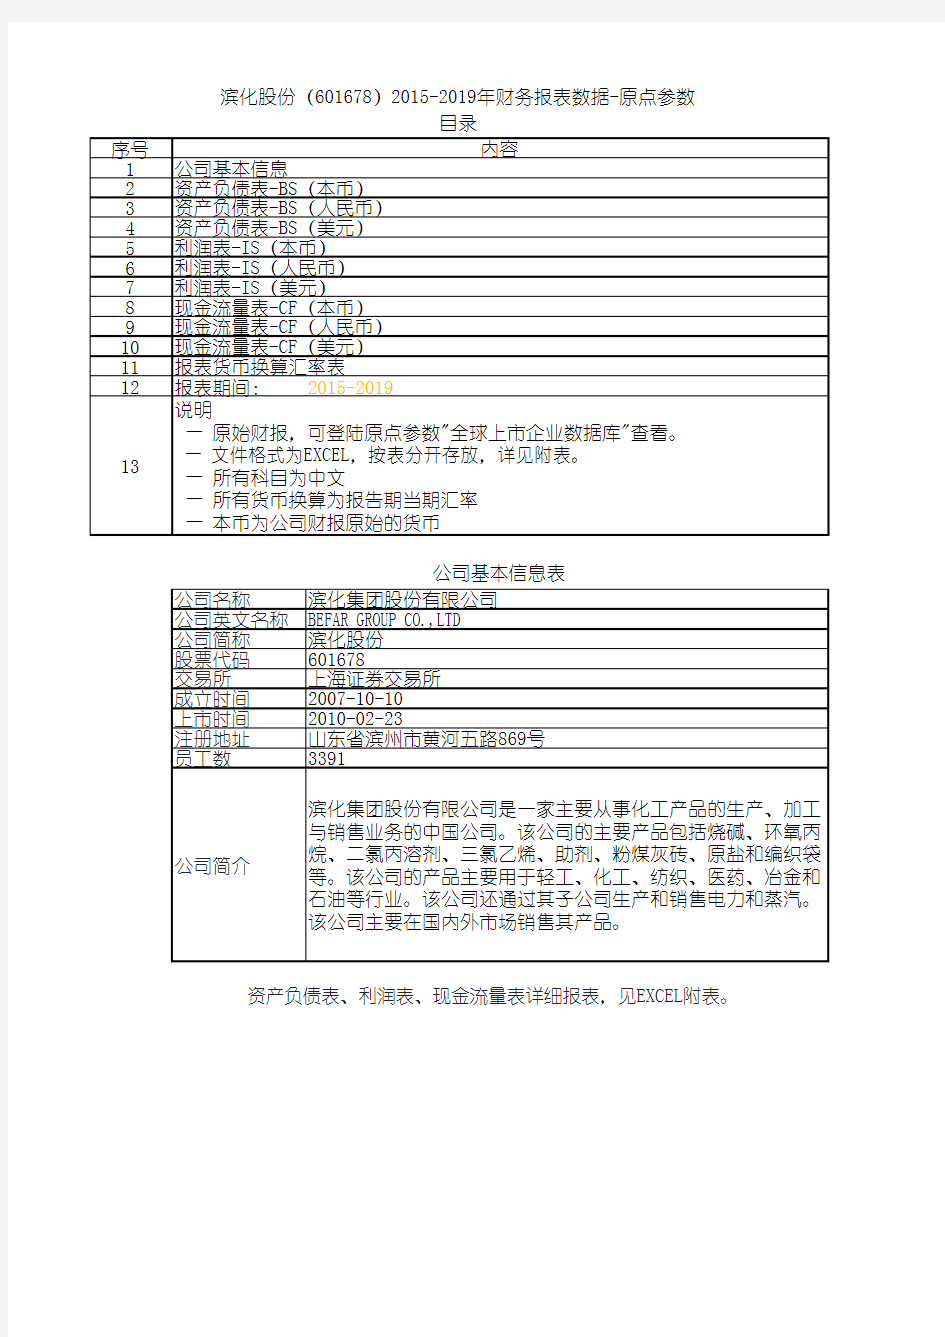 滨化股份(601678)2015-2019年财务报表数据-原点参数